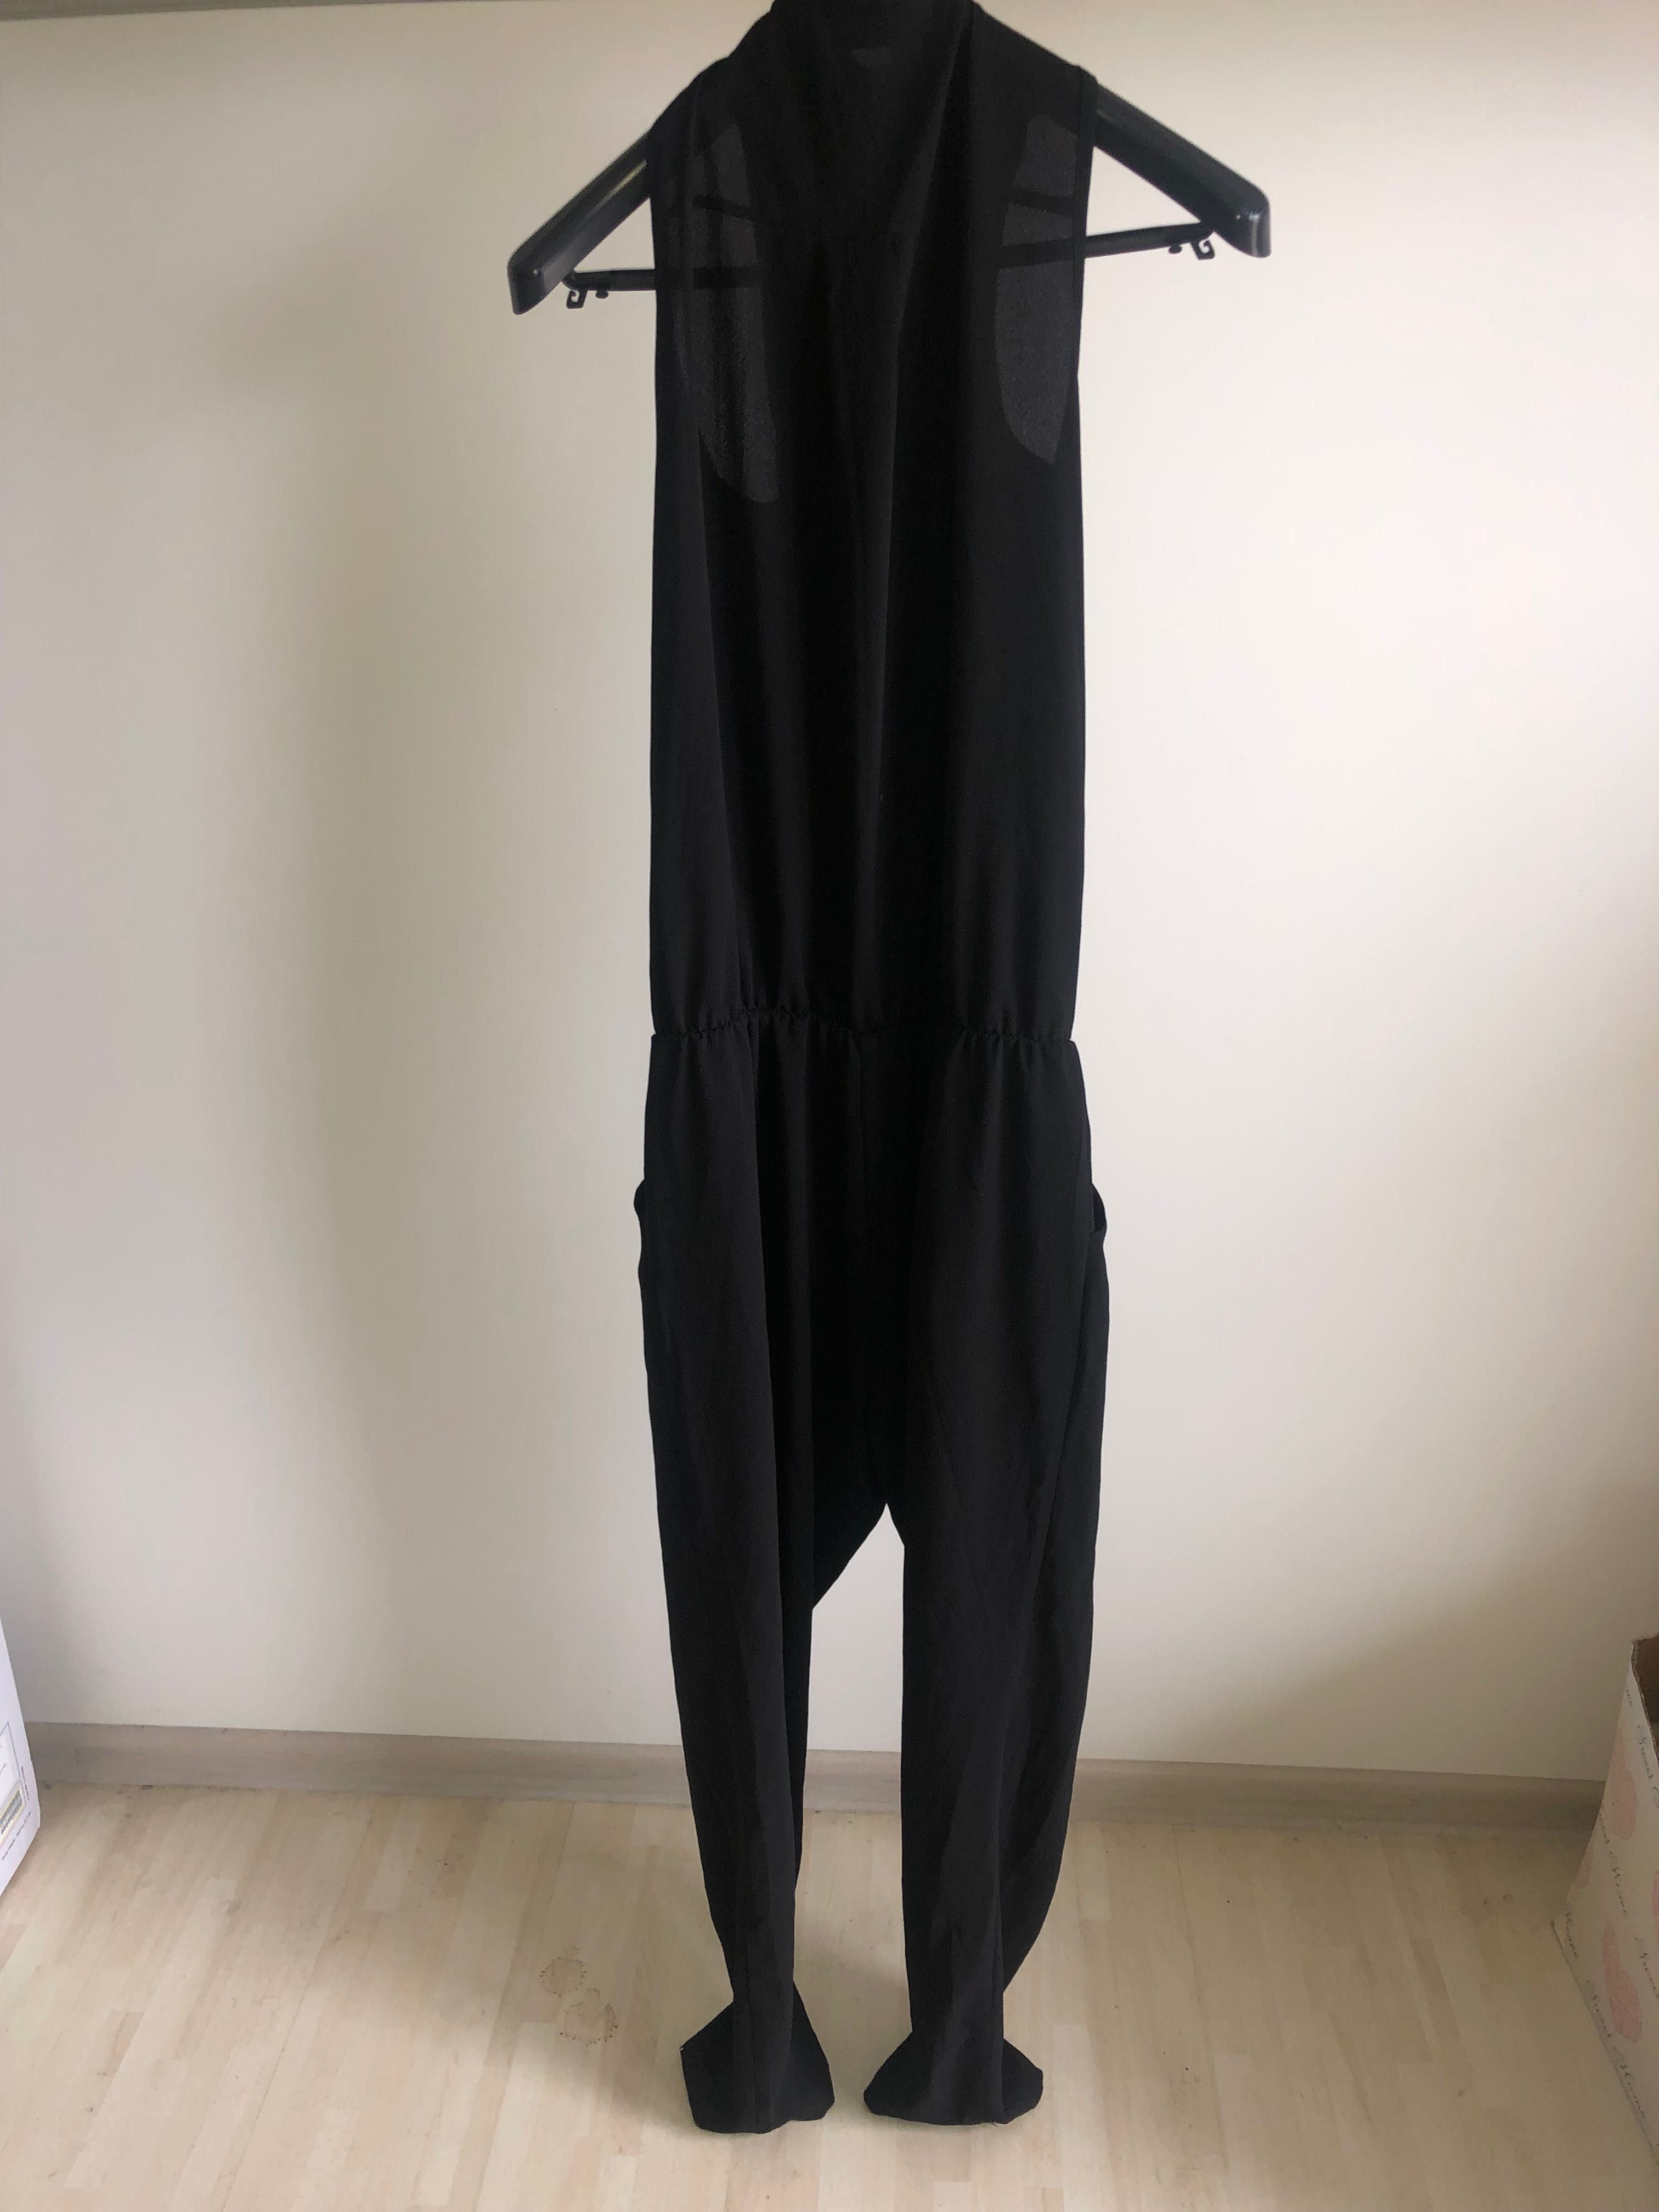 Kombinezon damski czarny długie spodnie róż 42/XL